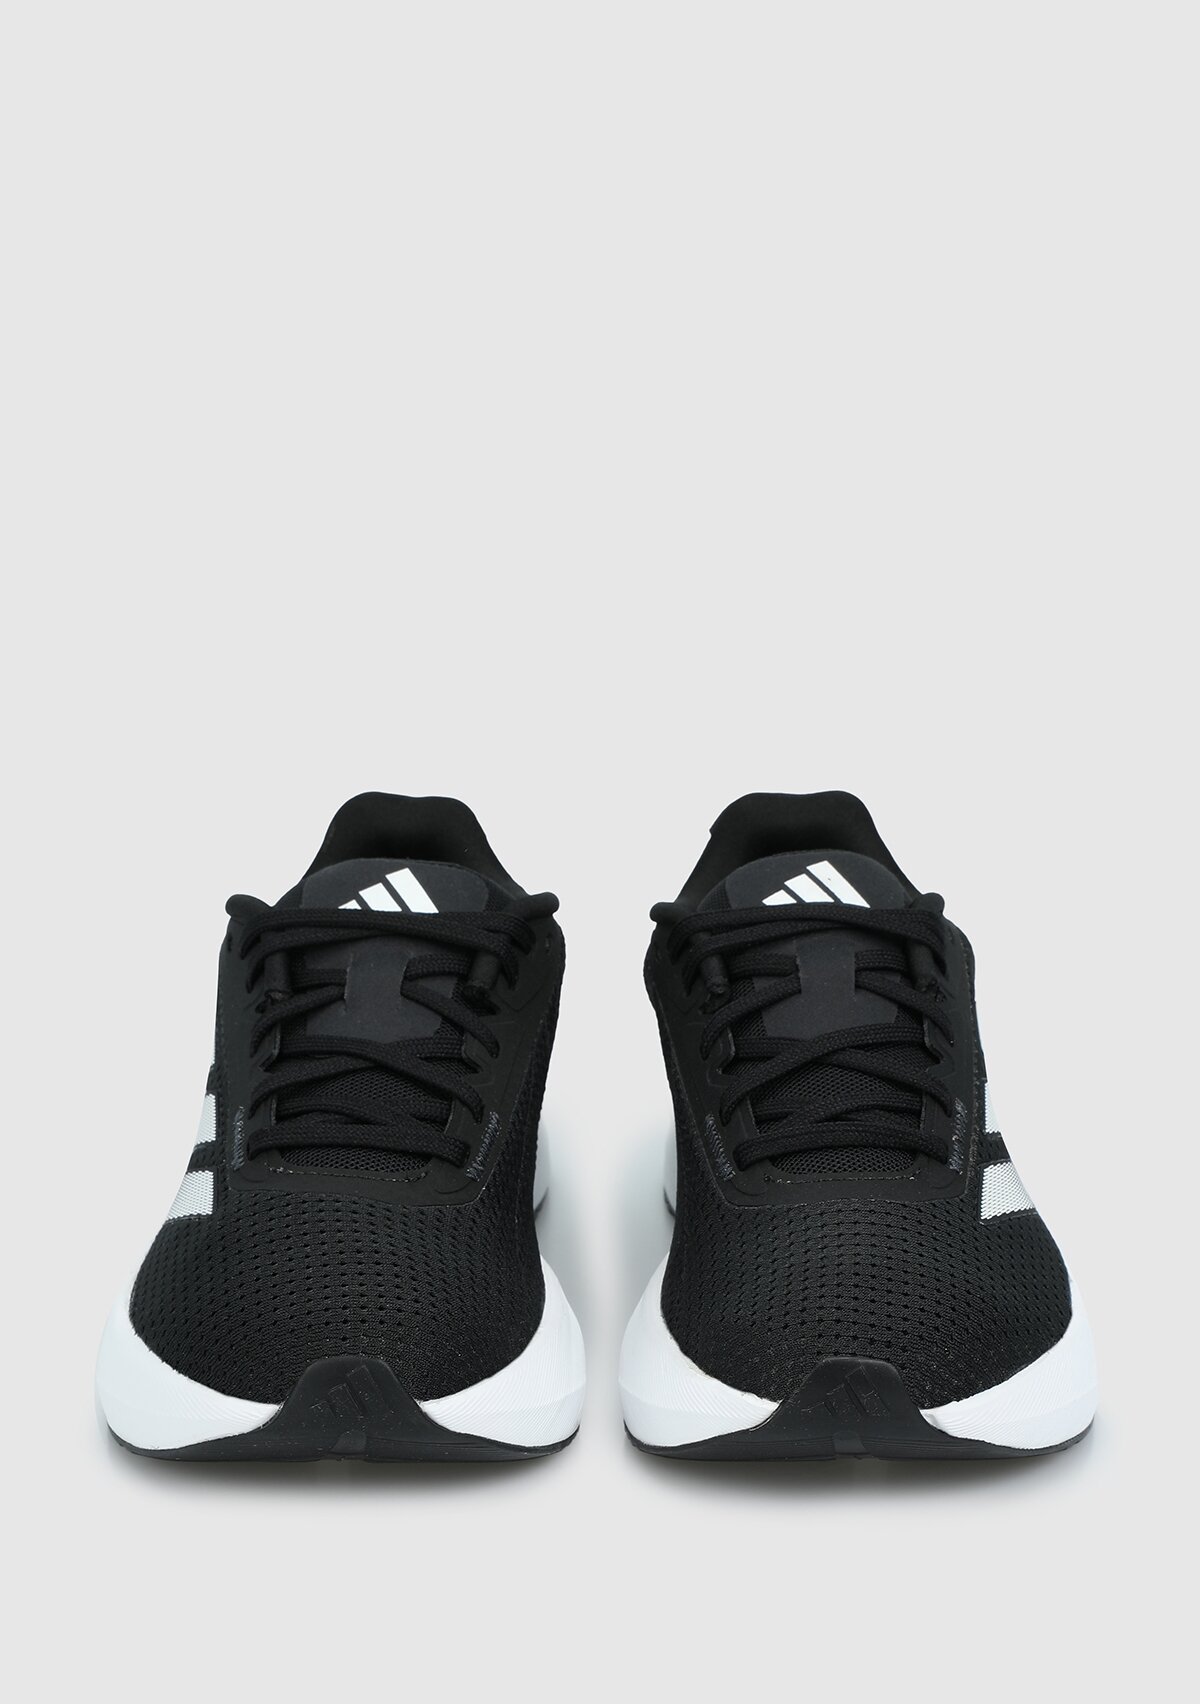 adidas Duramo Sl W siyah kadın koşu Ayakkabısı ıd9853